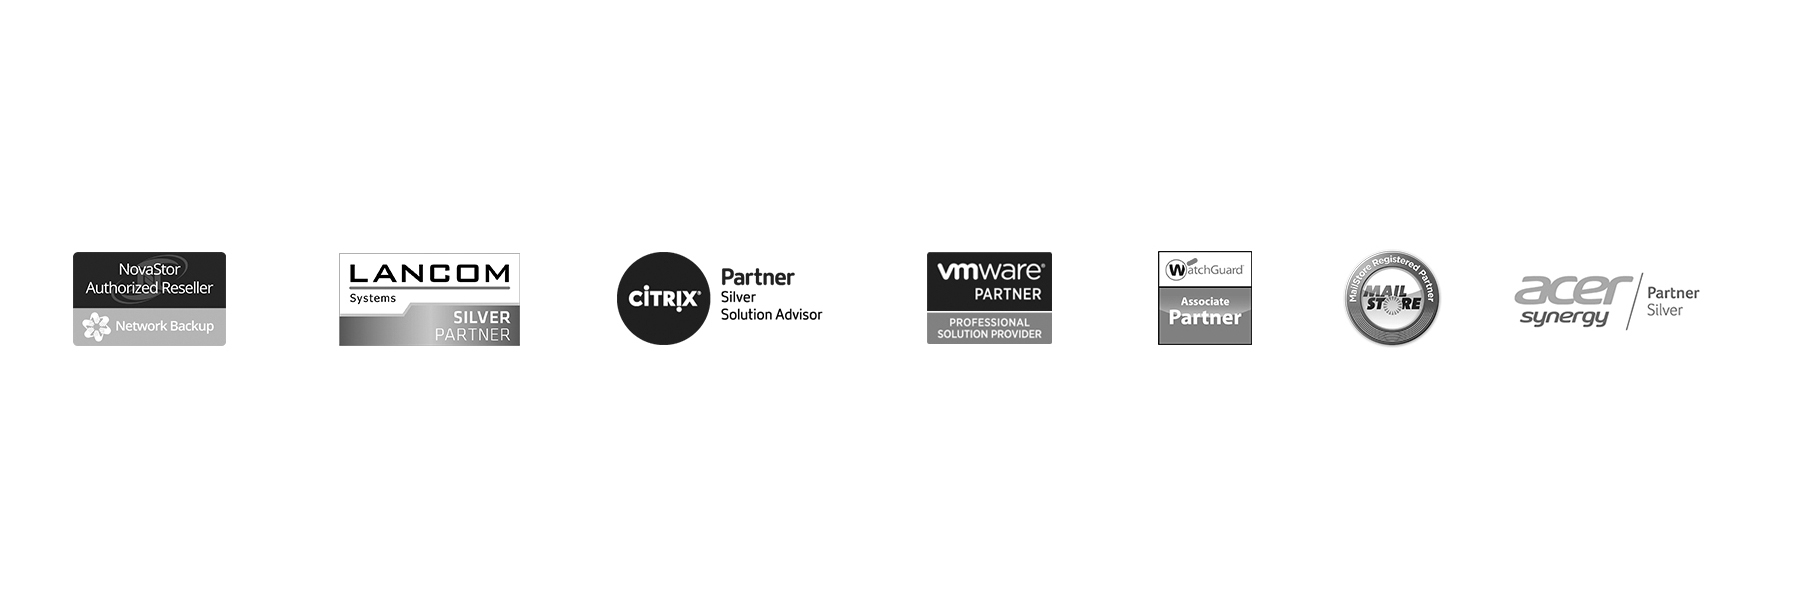 Ein schwarzweißer Slider in dem Partnerlogos der Firmen Novastor, Lancom, Citrix, vmware, WatchGuard, Mailstore und Acer zu sehen sind.